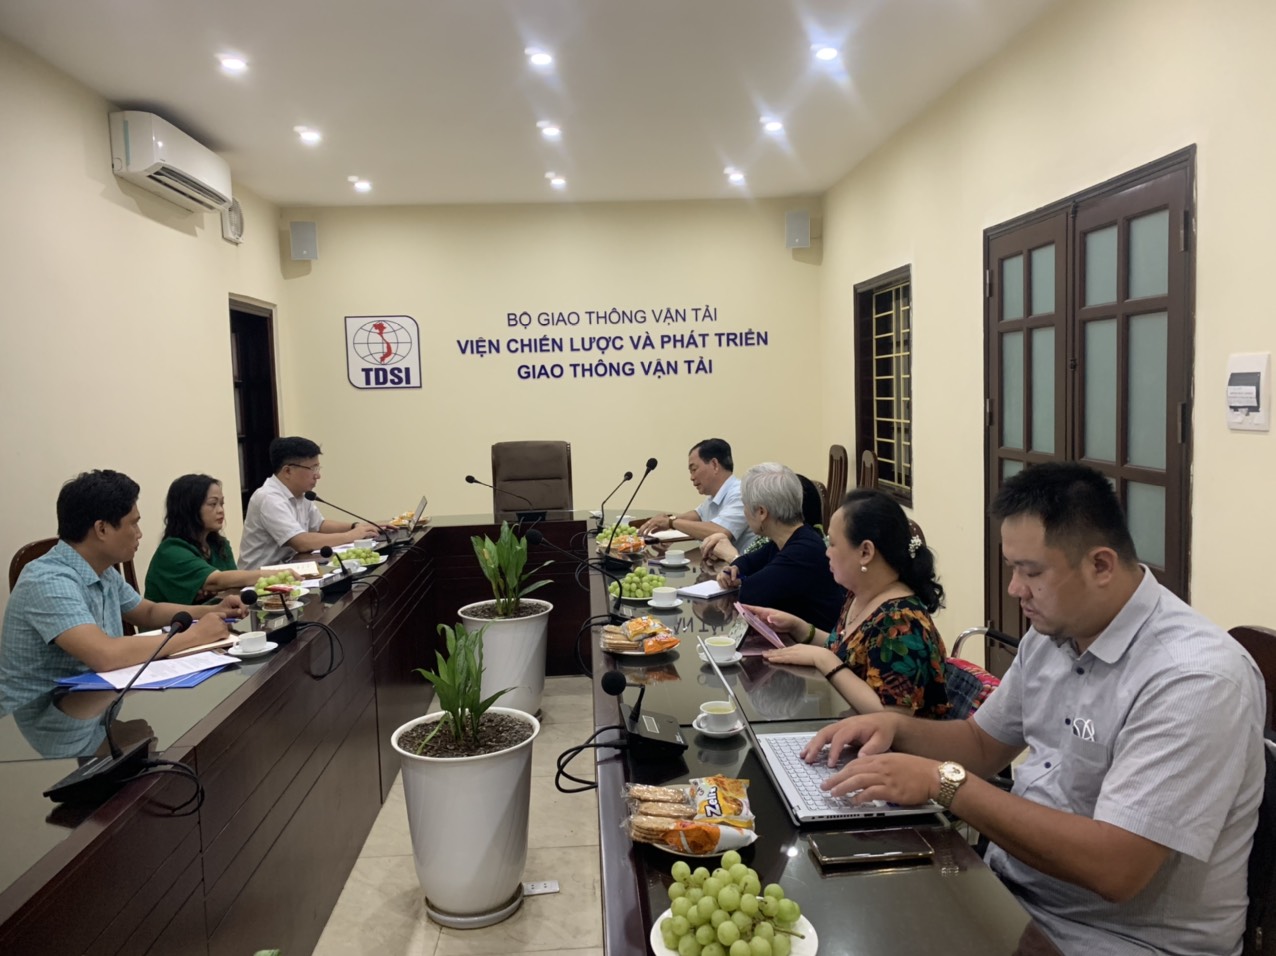 Viện chiến lược và Phát triển GTVT trao đổi với Liên hiệp hội người khuyết tật Việt Nam về “Tiếp cận giao thông và hạ tầng cơ sở đối với người khuyết tật”